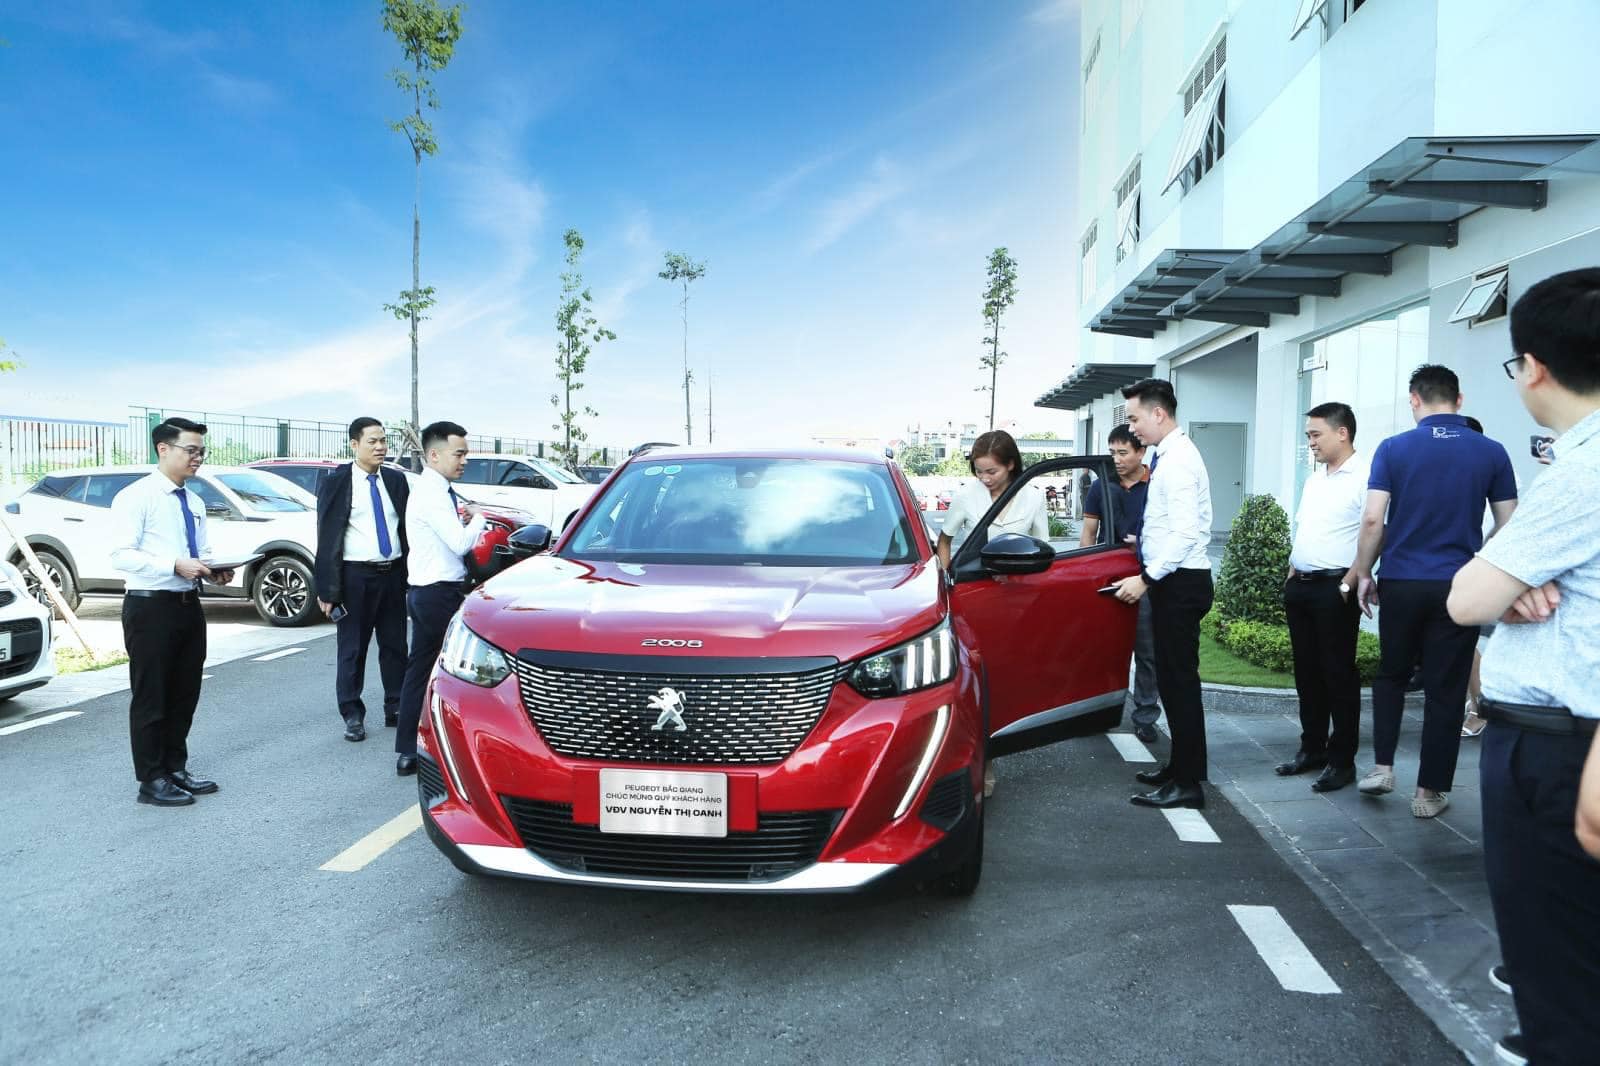 Nguyễn Thị Oanh hân hoan nhận xe Peugeot, chờ đợi trải nghiệm thú vị  - Ảnh 5.